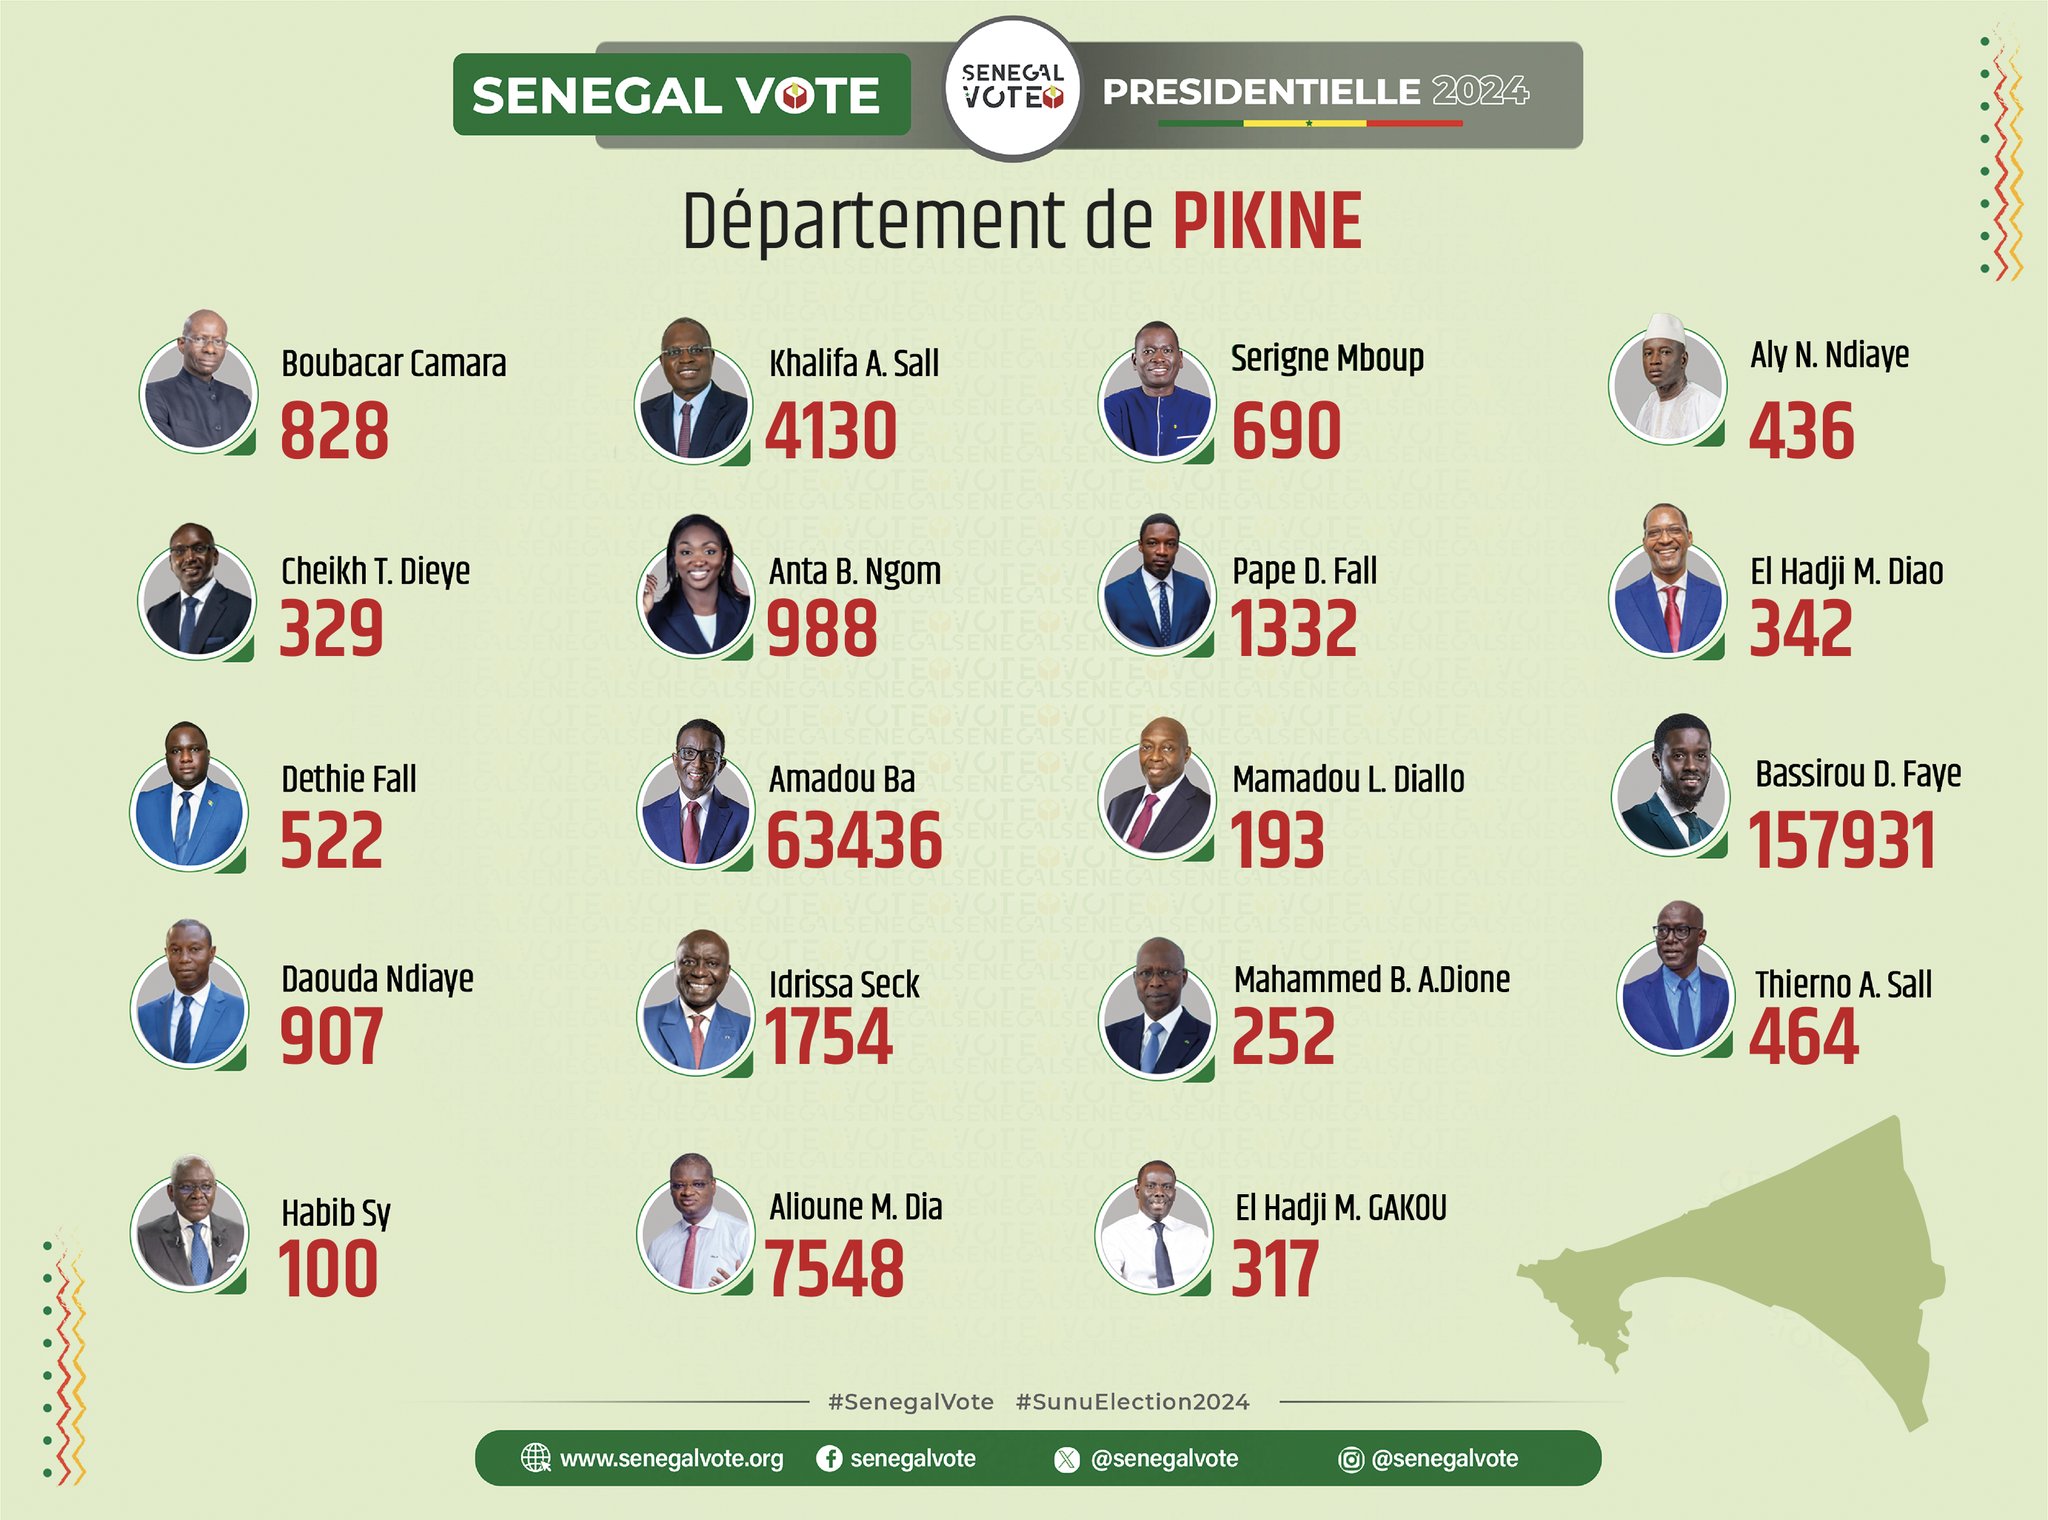 Bassirou Diomaye Faye triomphe dans le département de Dakar avec plus de 160 000 voix d’écart